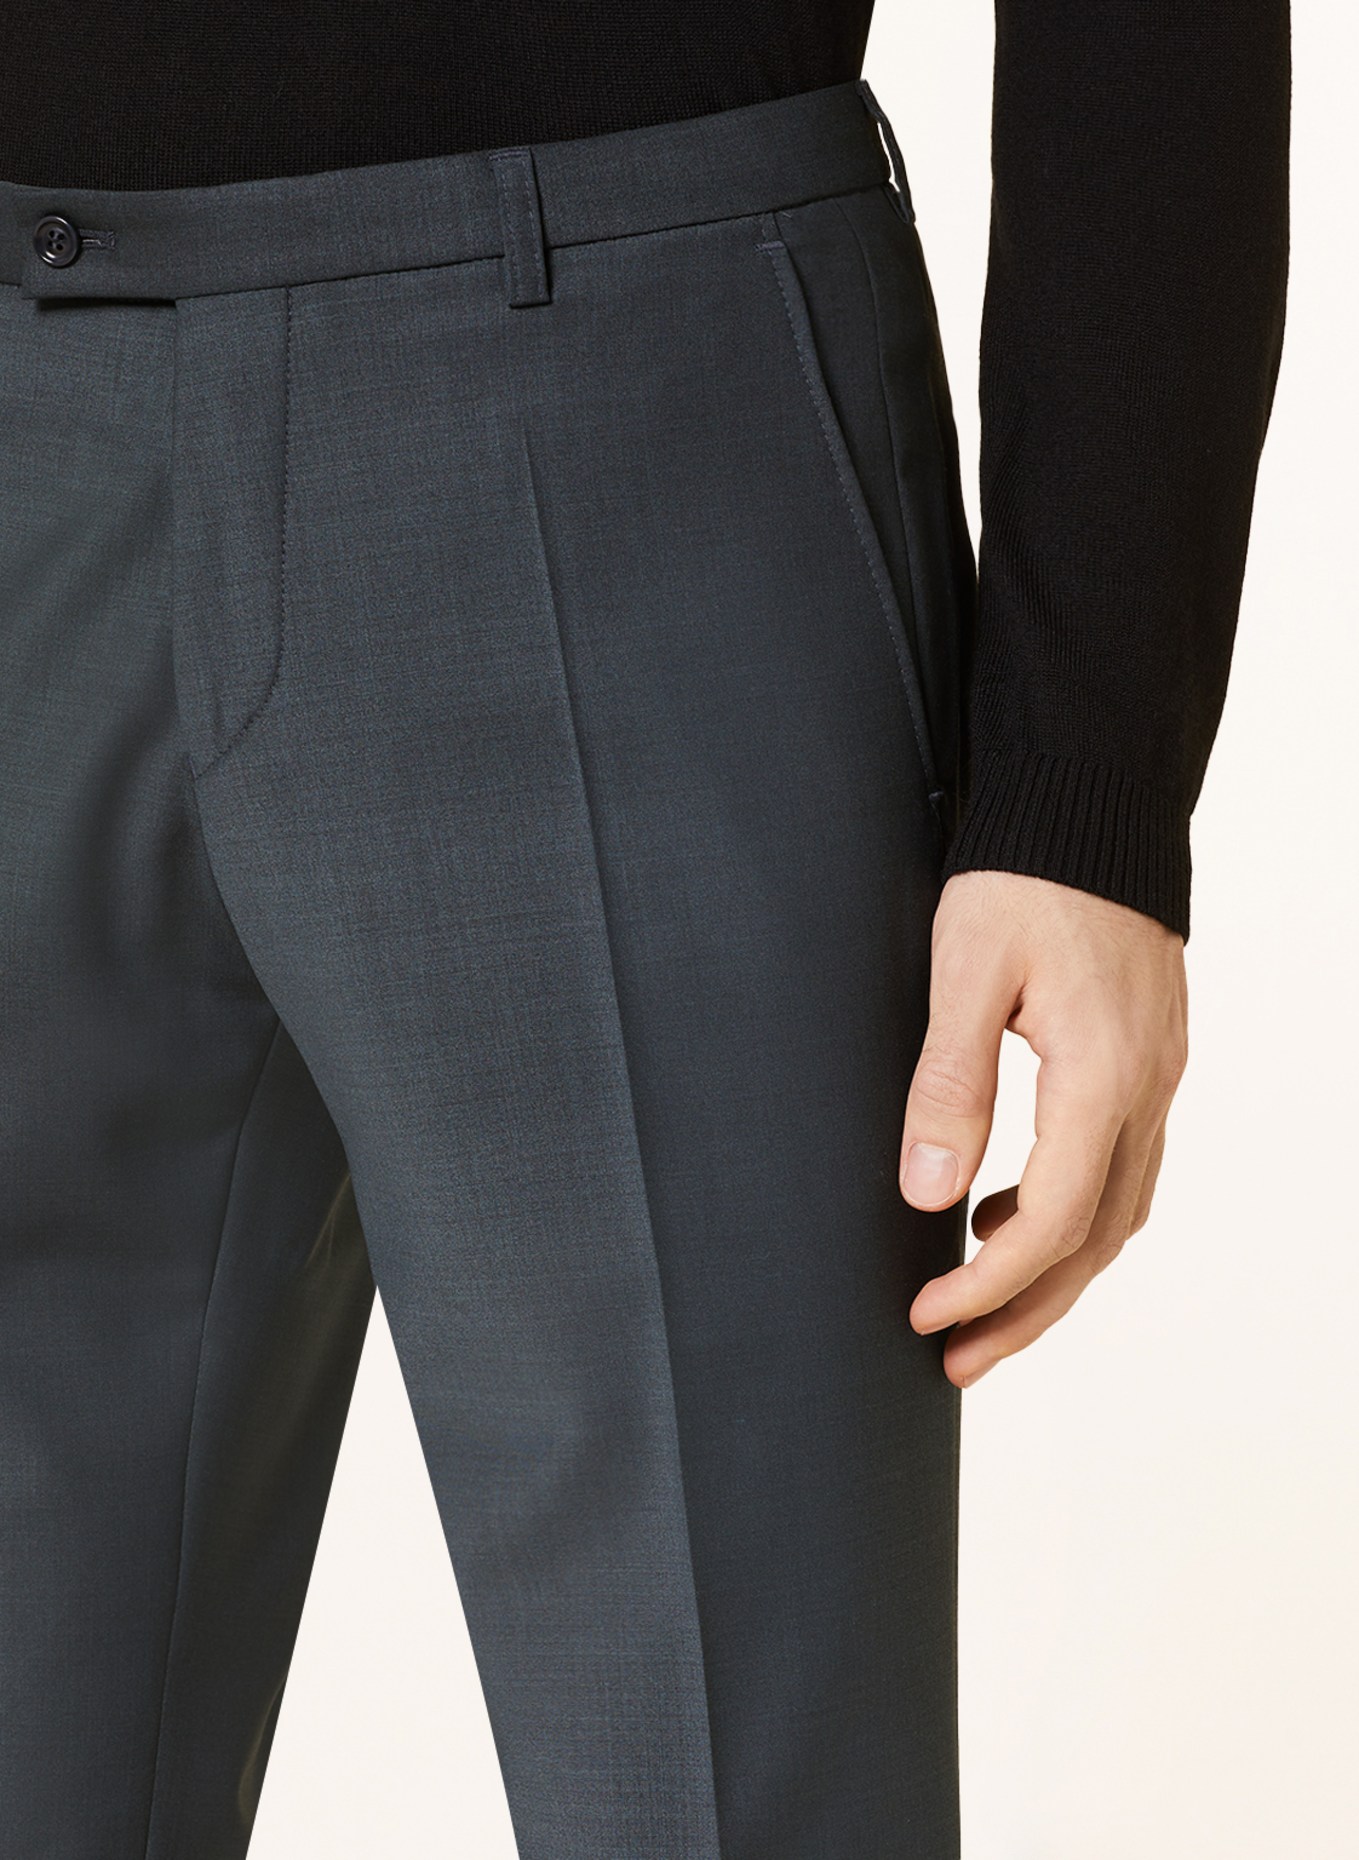 CG - CLUB of GENTS Suit trousers COLE slim fit, Color: 53 gruen dunkel (Image 6)